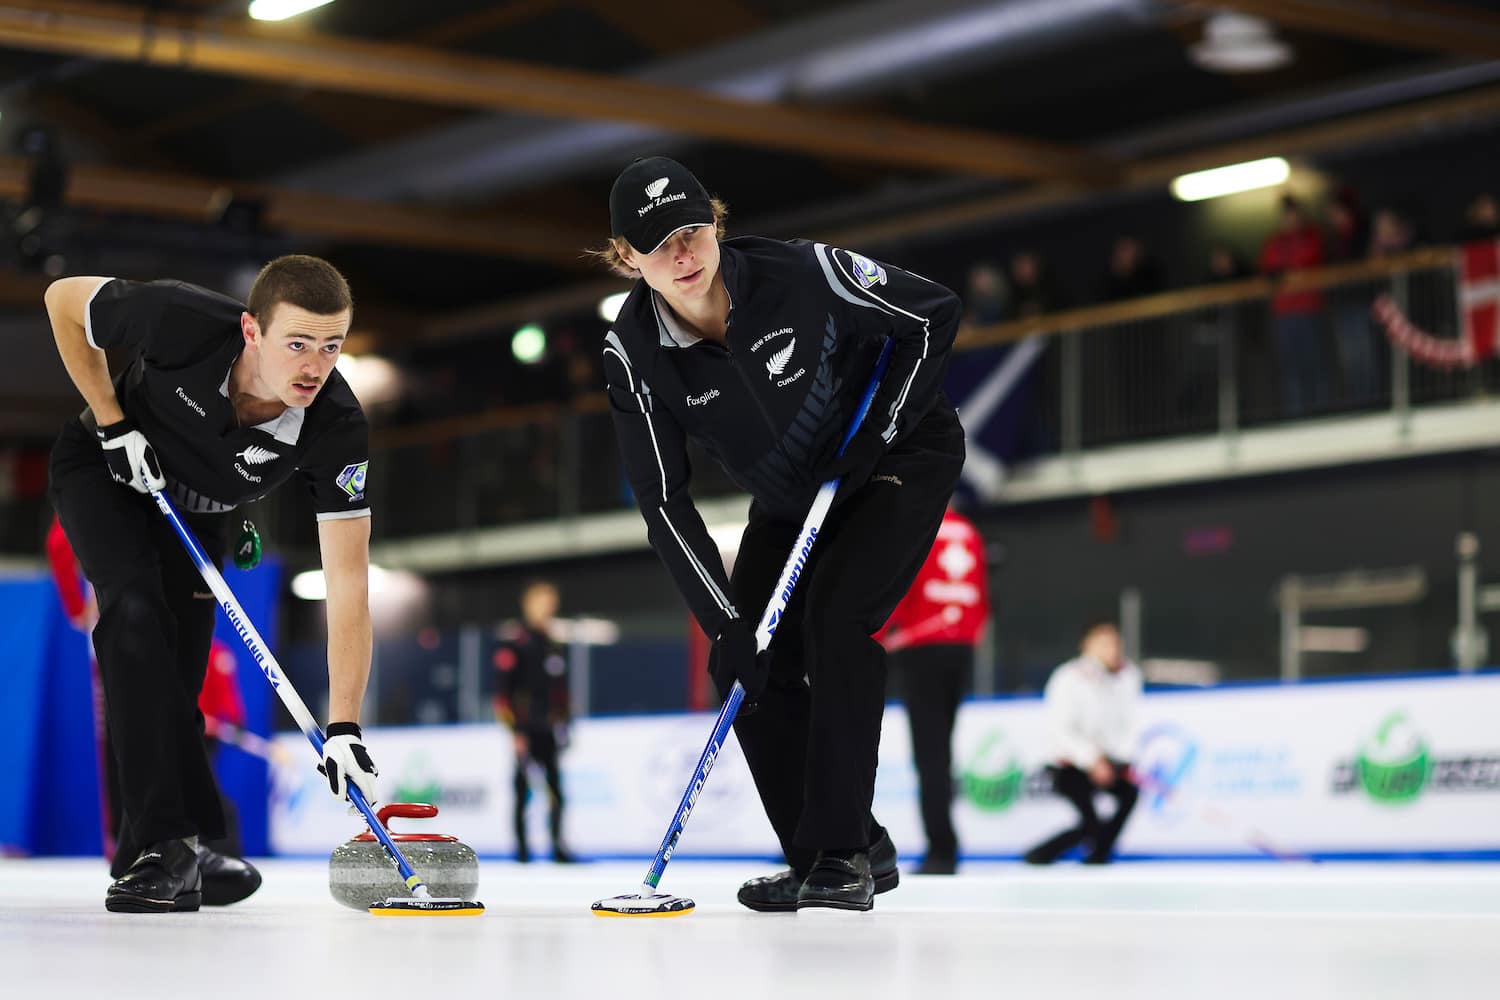 World Junior-B Championships set to get underway in Lohja, Finland